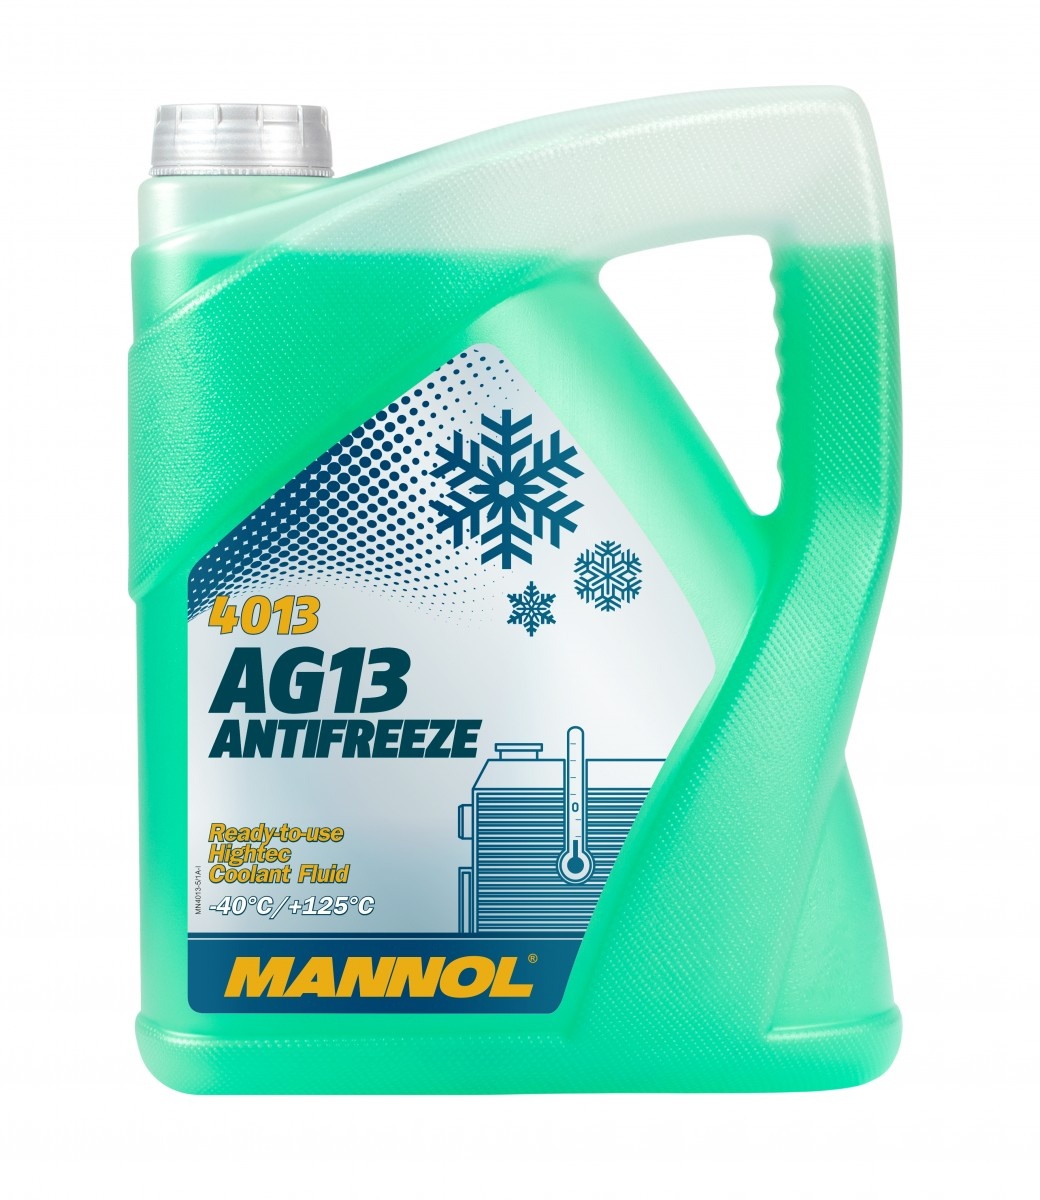 Антифриз Mannol AG13 (-40) 4013 5L